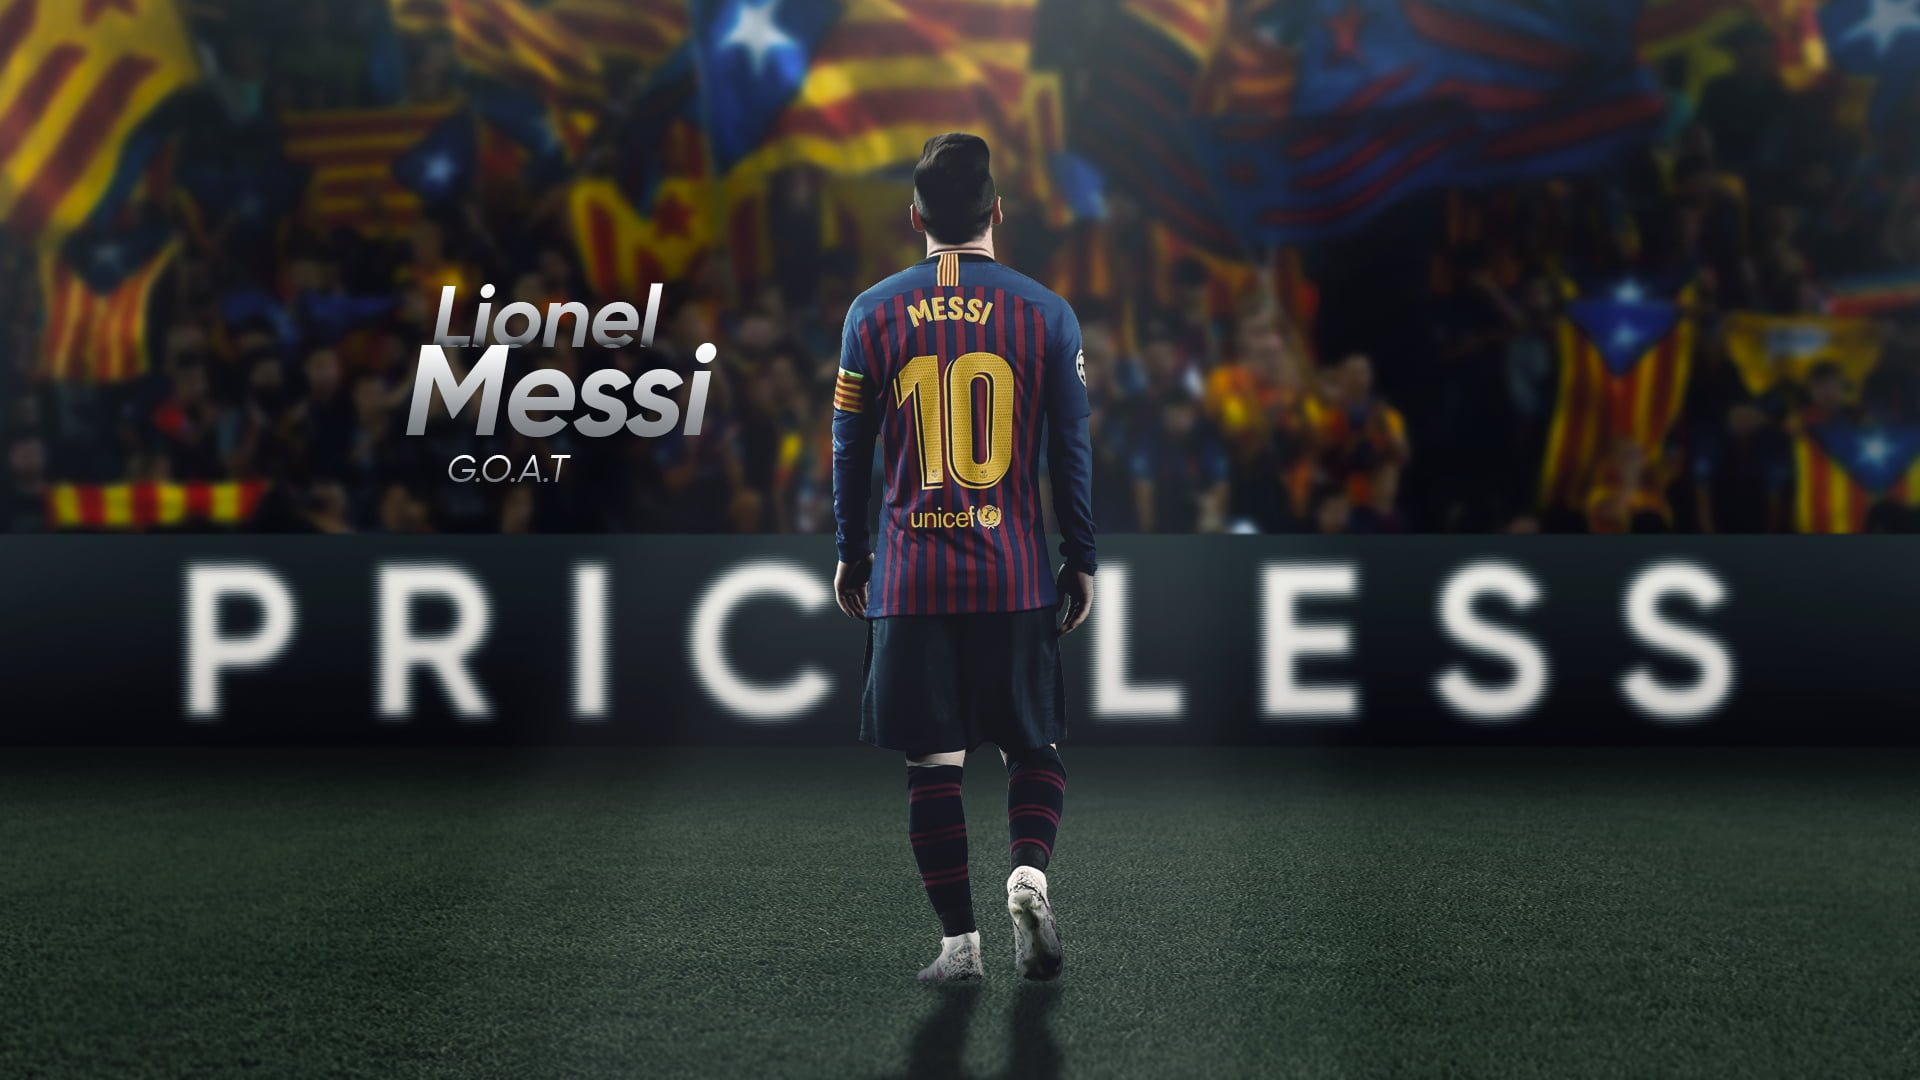 Messi, cầu thủ được ngưỡng mộ nhất trong làng bóng đá, nay đã được chuyển đến màn hình của bạn với hình nền máy tính hấp dẫn. Các fan Messi sẽ không thể cưỡng lại được sức hấp dẫn của bức ảnh nghệ thuật này.